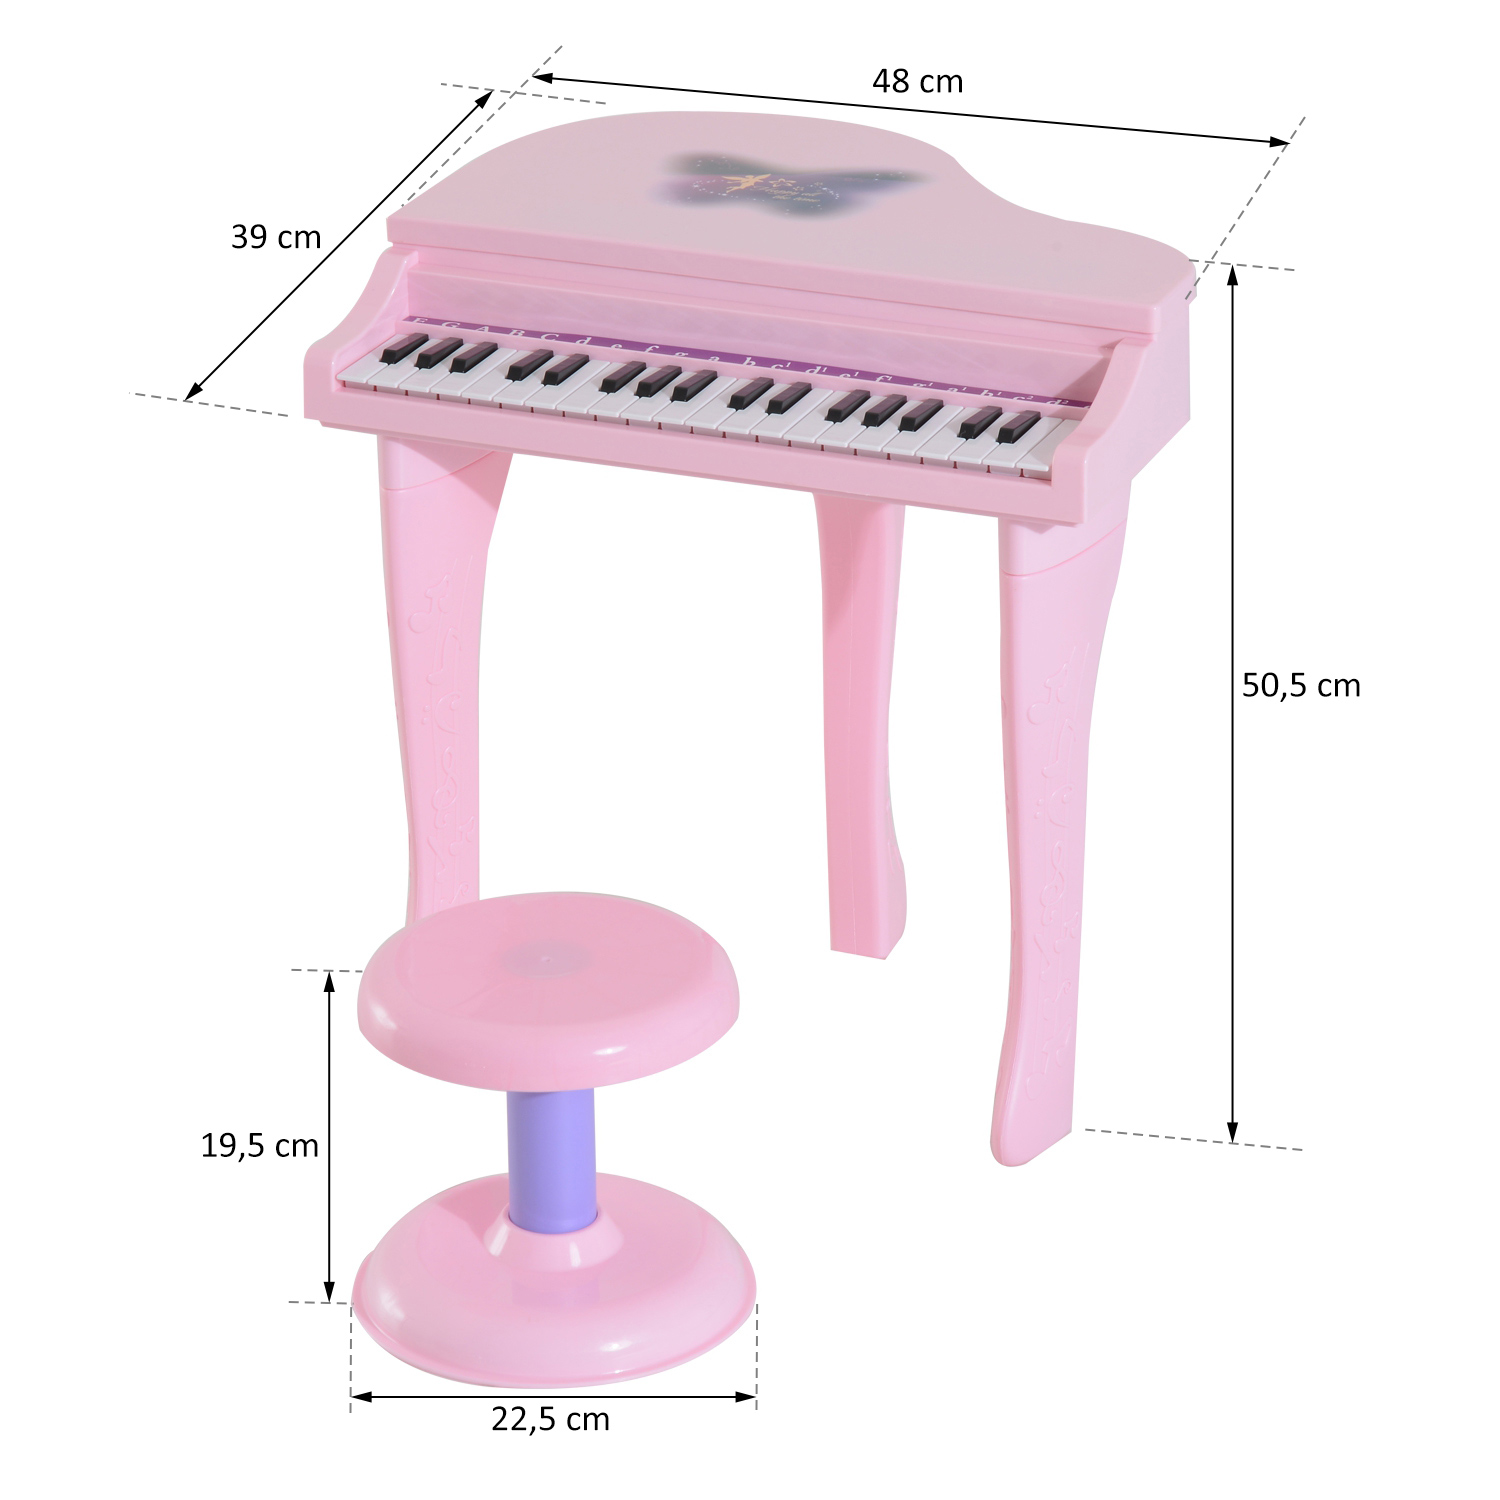 Piano infantil 61 teclas com microfone Multifuncional Órgão